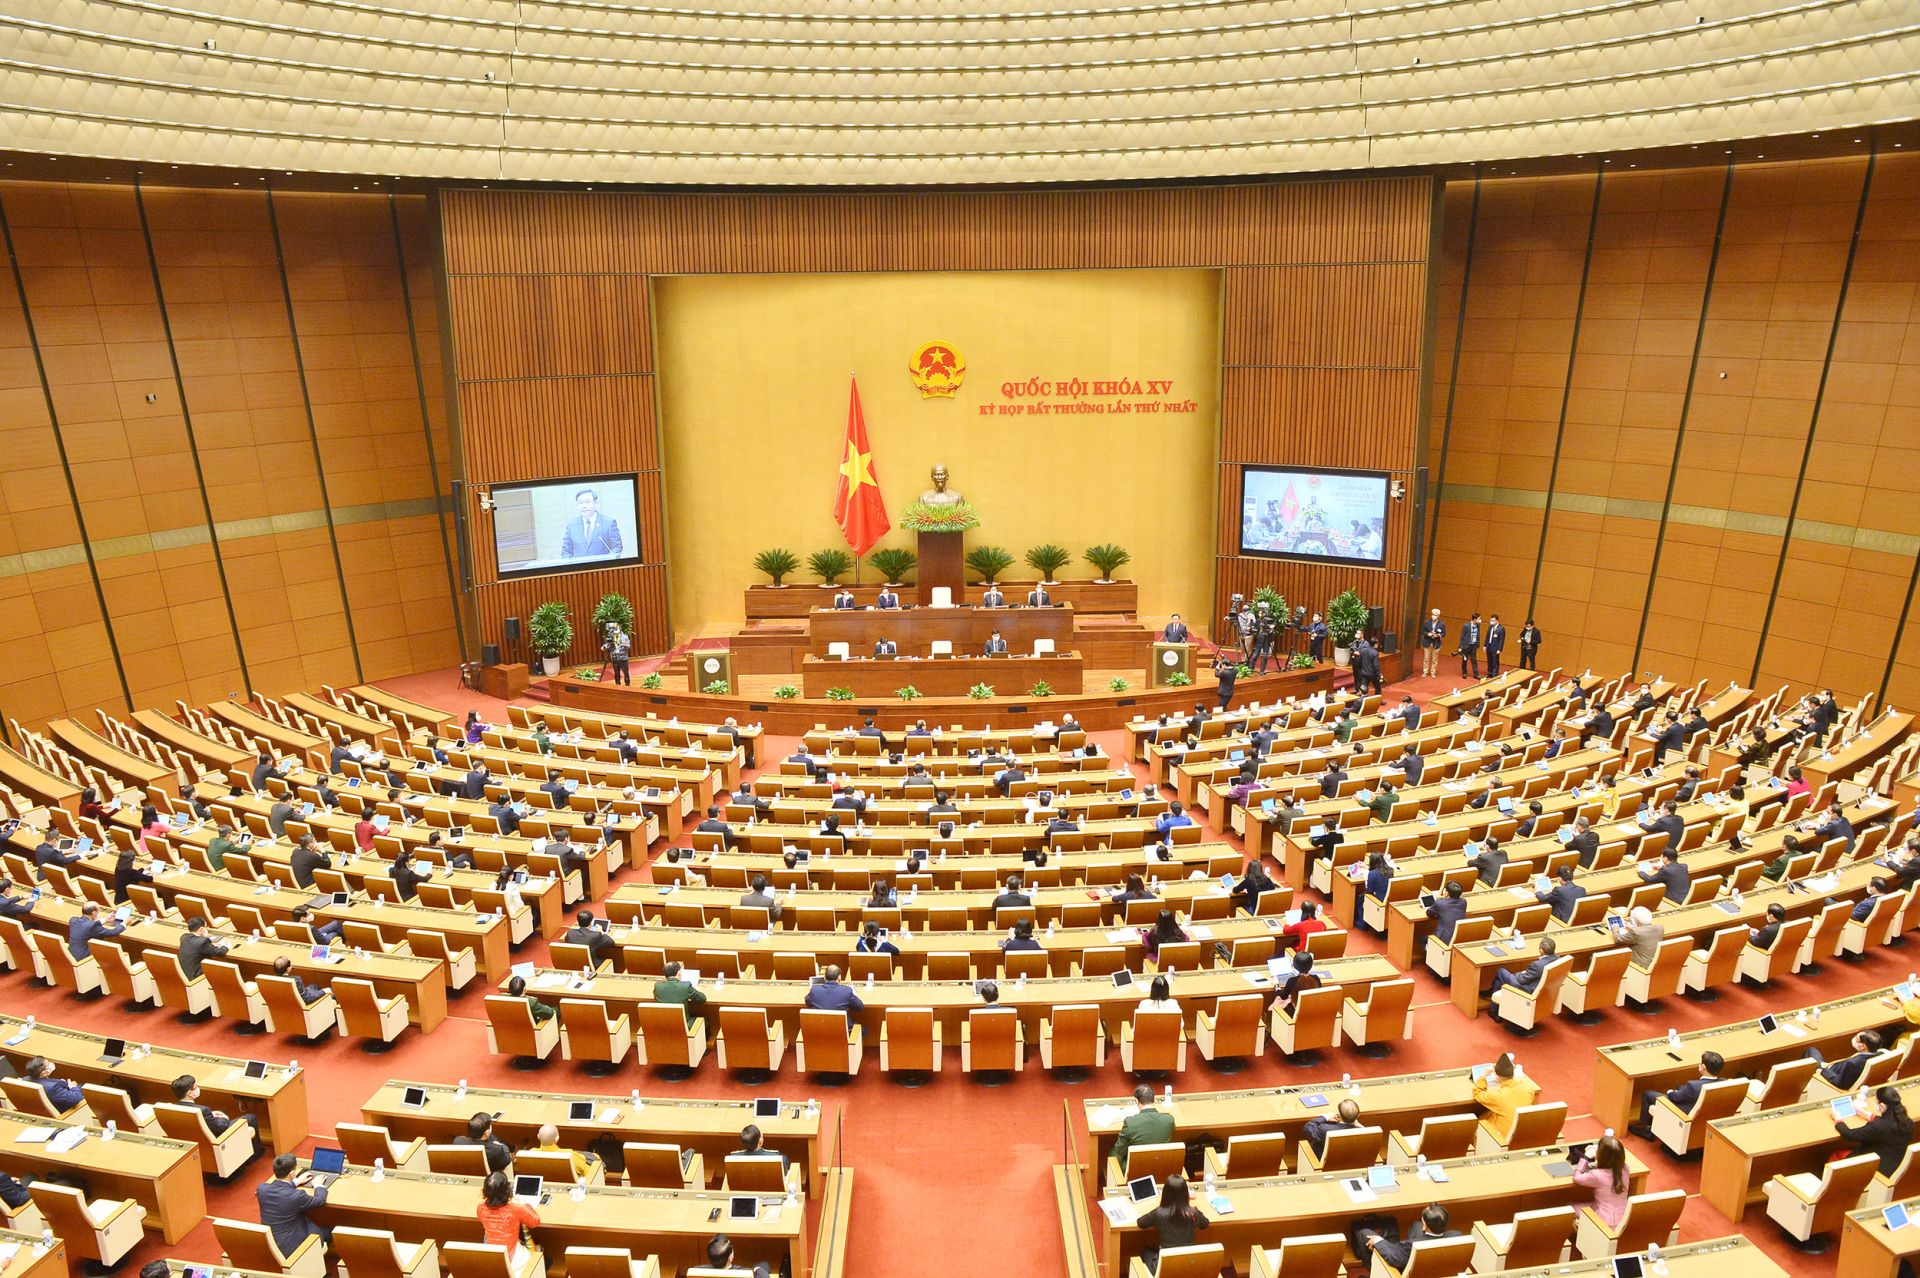 Quốc hội đã tiếp tục phiên thảo luận ở hội trường để đánh giá và bổ sung kết quả thực hiện kế hoạch phát triển kinh tế-xã hội và ngân sách nhà nước trong năm 2022